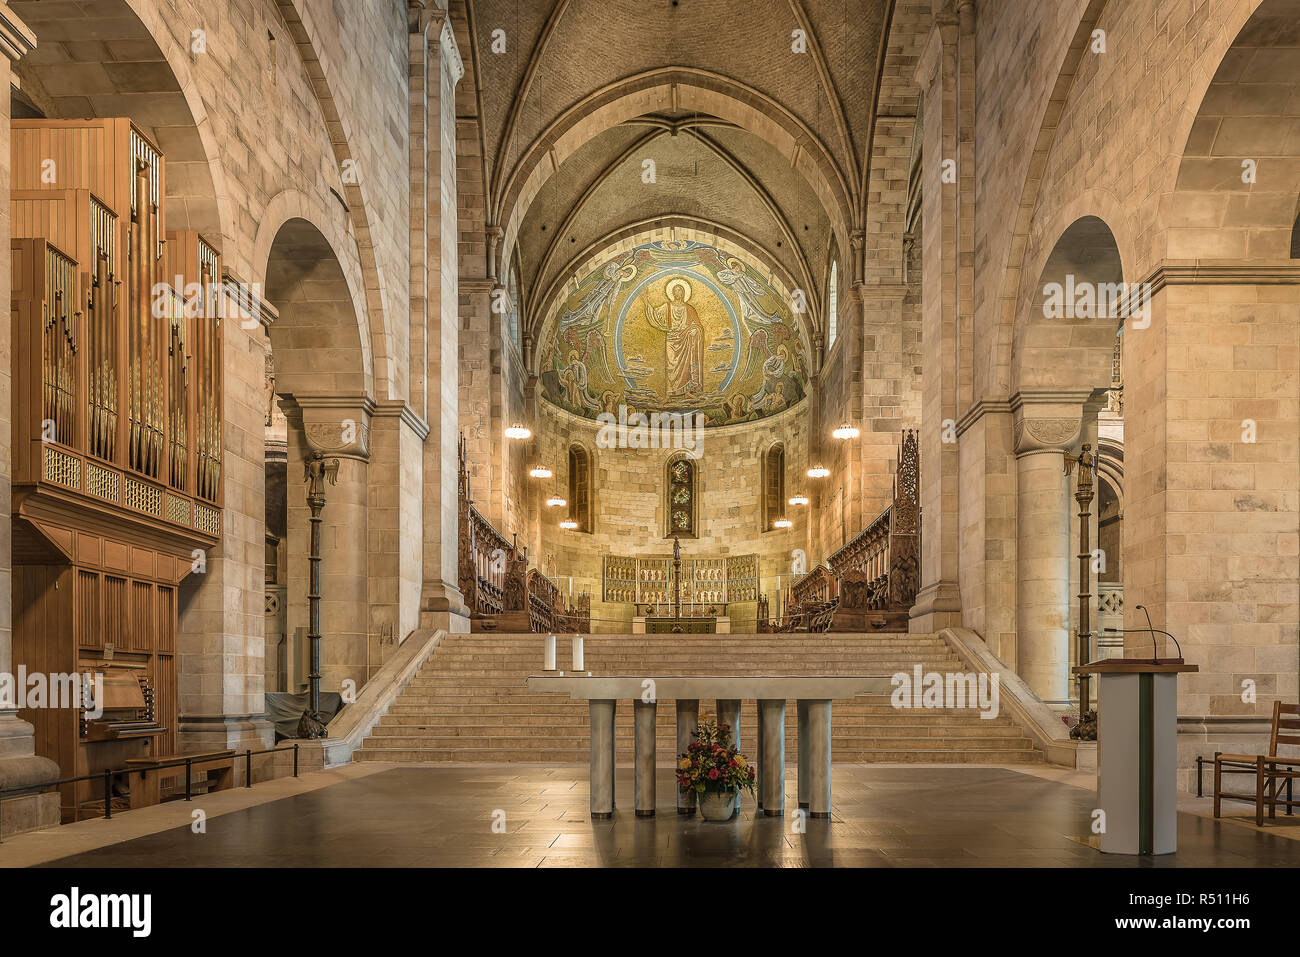 Interno della cattedrale di Lund con la pietra arenaria, altare e il mosaico di luce soffusa, Lund, Svezia, 16 novembre 2018 Foto Stock